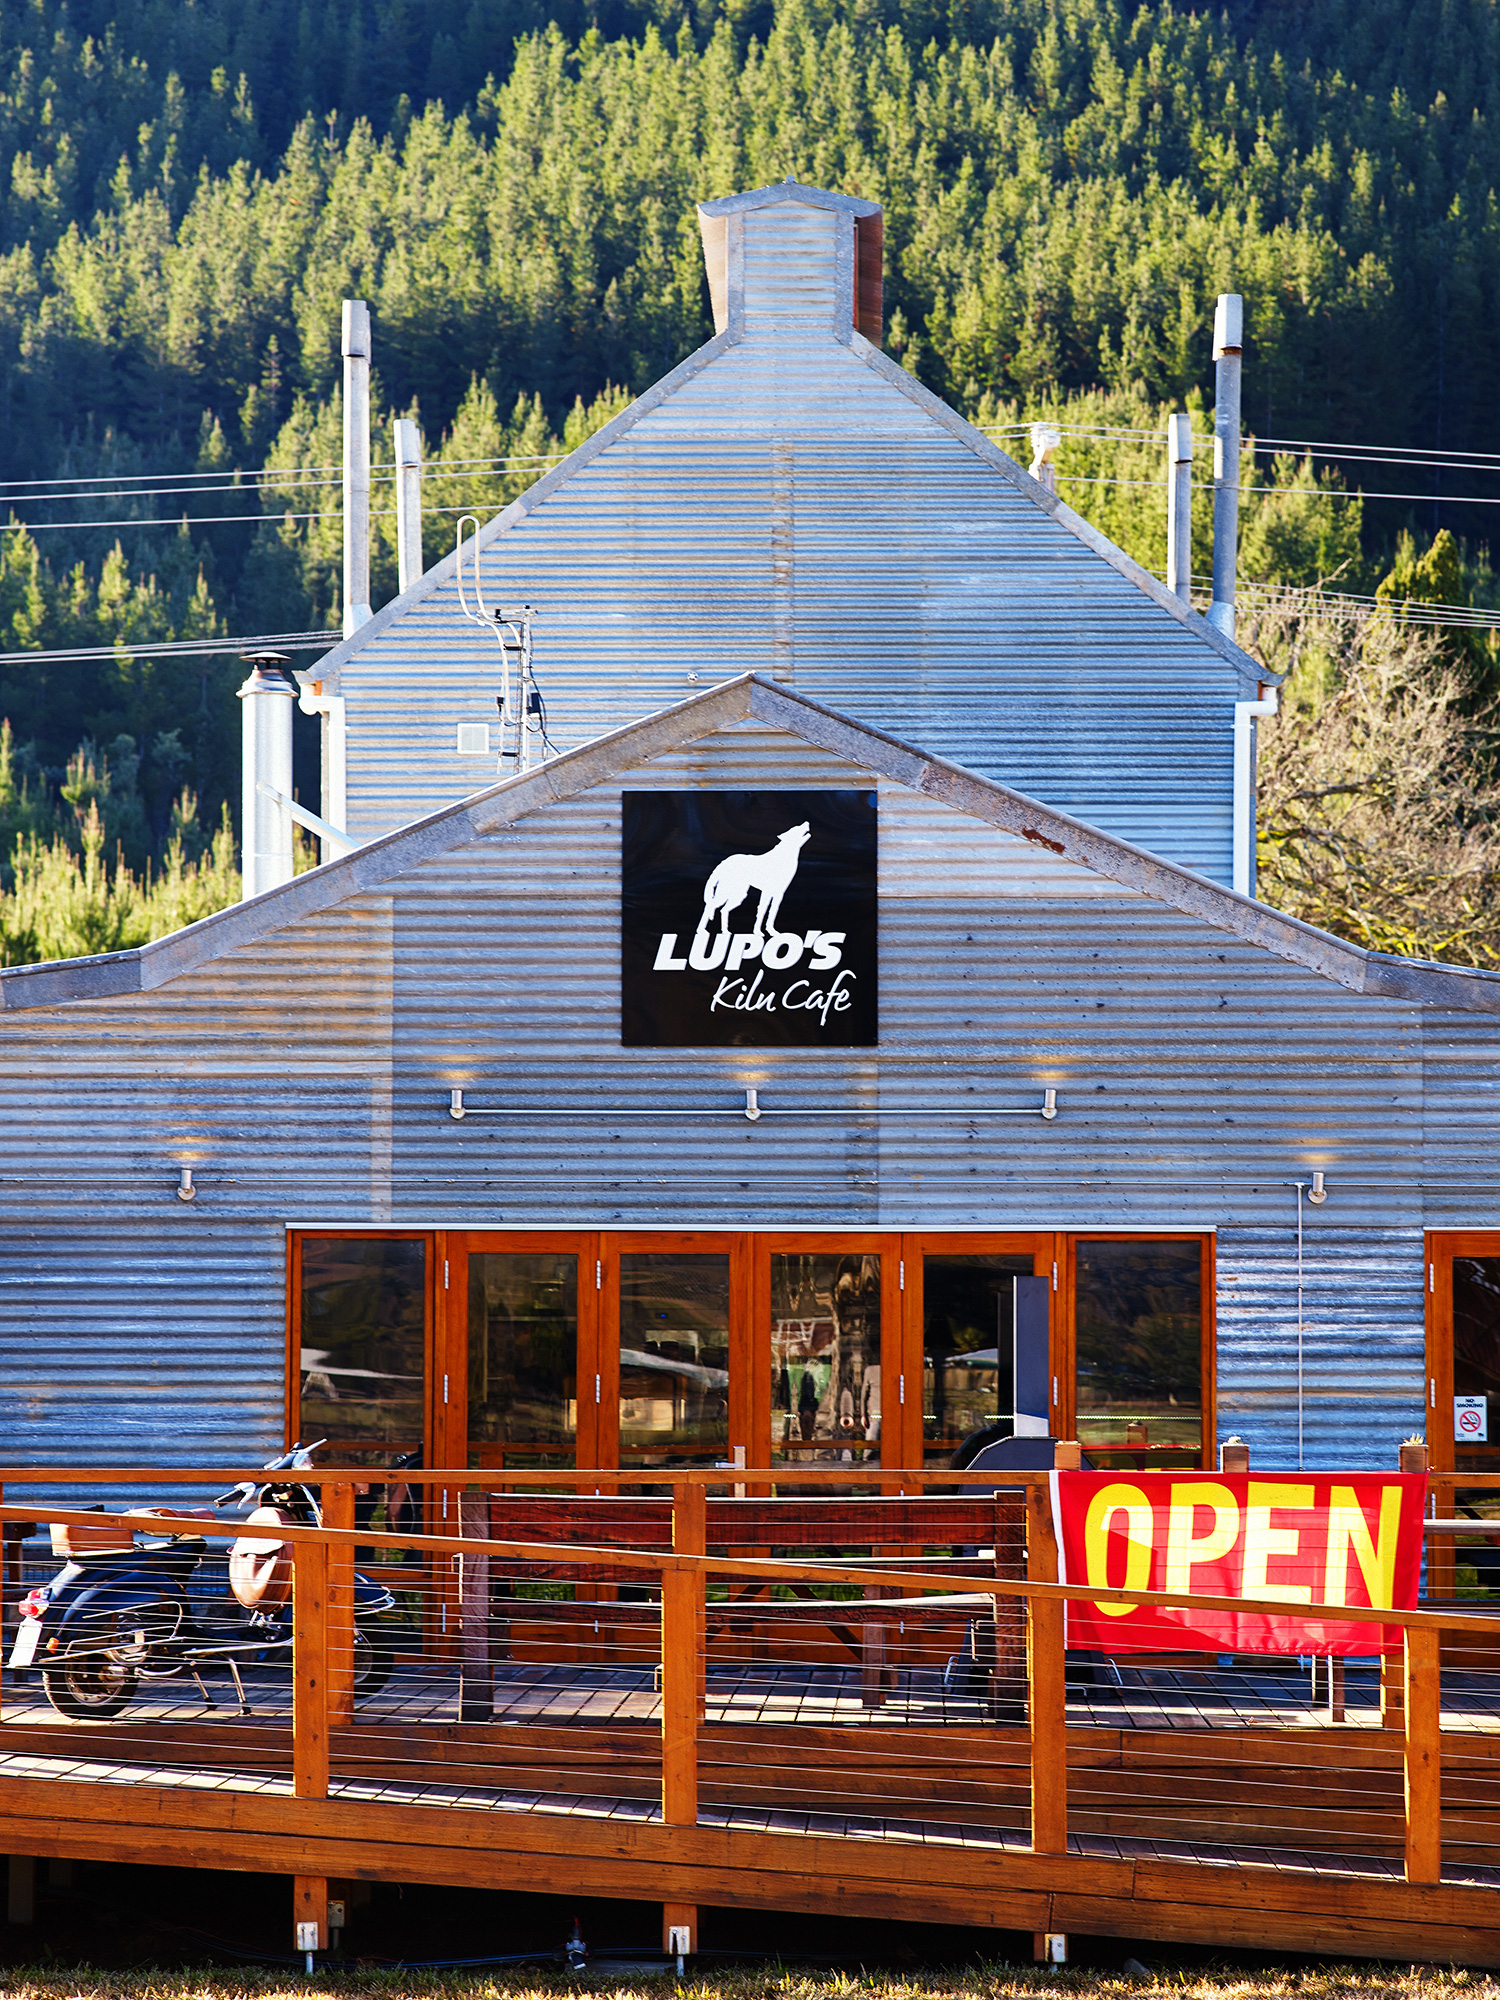 Lupo's kiln Cafe